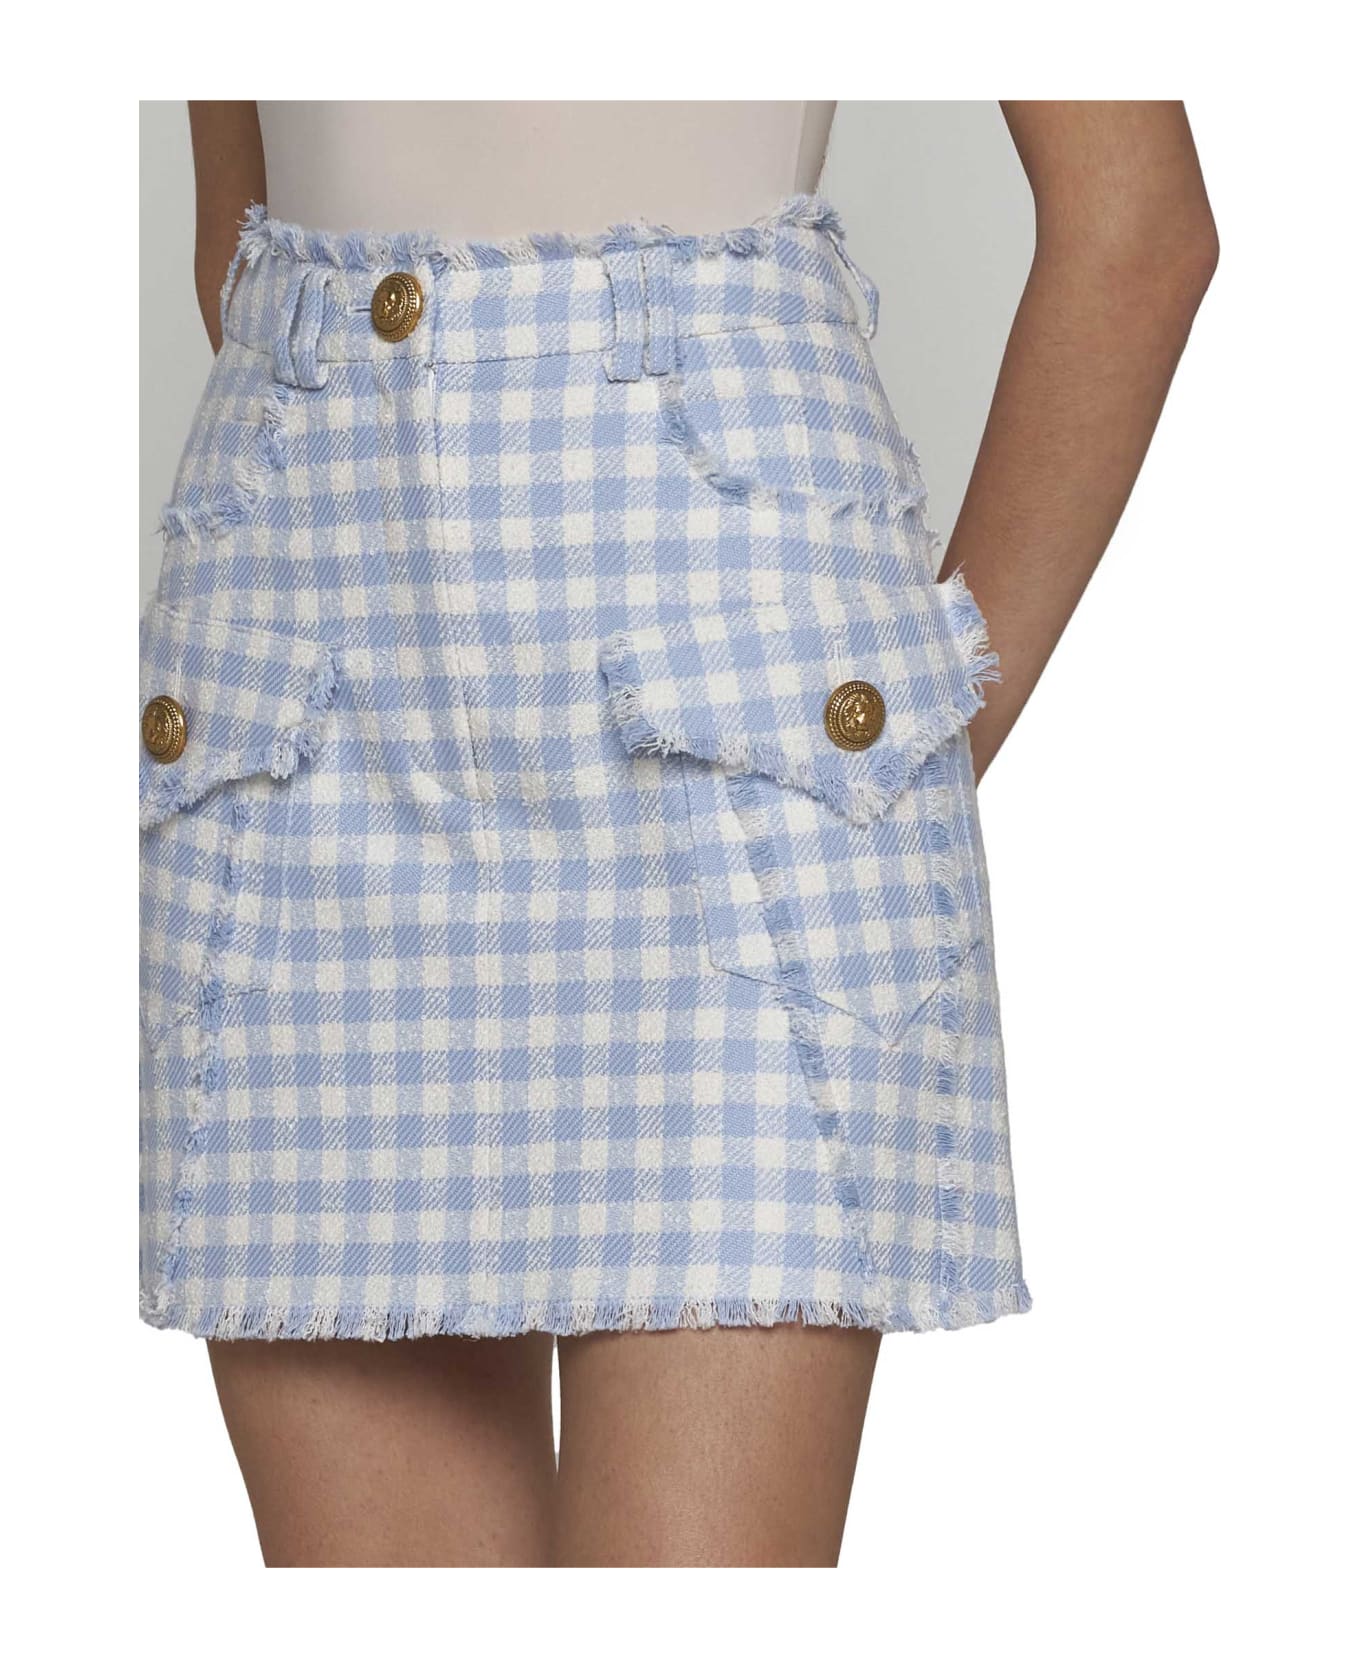 Balmain A-line Mini Skirt - Bleu pale/blanc